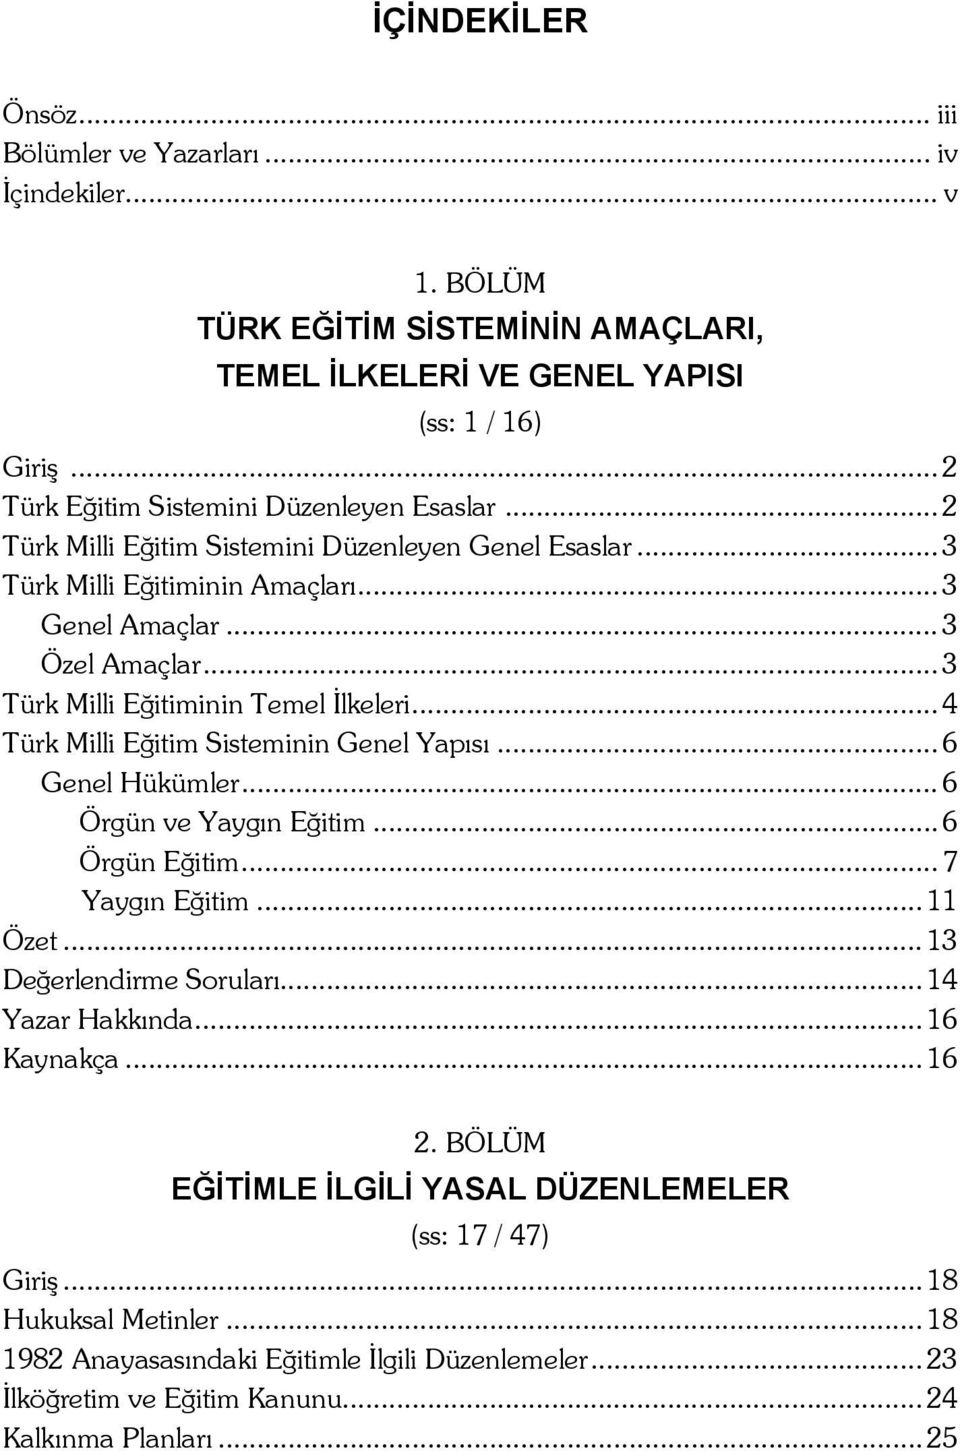 .. 3 Türk Milli Eğitiminin Temel İlkeleri... 4 Türk Milli Eğitim Sisteminin Genel Yapısı... 6 Genel Hükümler... 6 Örgün ve Yaygın Eğitim... 6 Örgün Eğitim... 7 Yaygın Eğitim... 11 Özet.